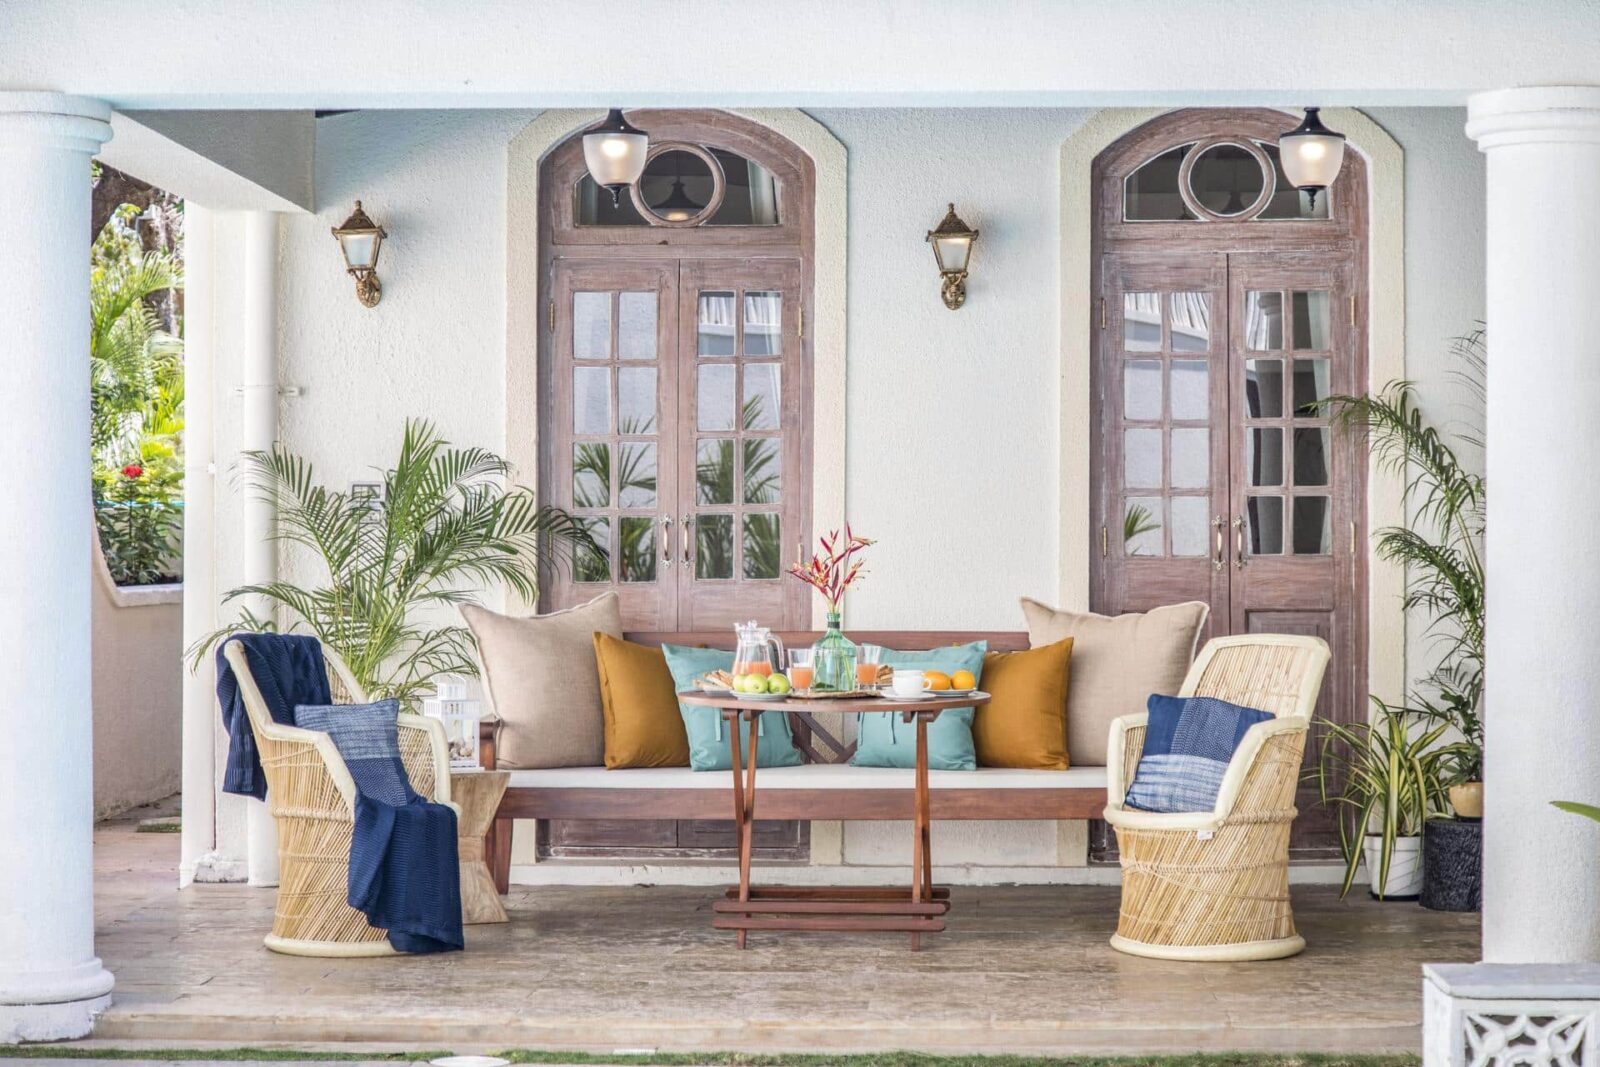 Monforte Villa I - Goa Villas with Private Pool for Sale - Elegant Seating Area